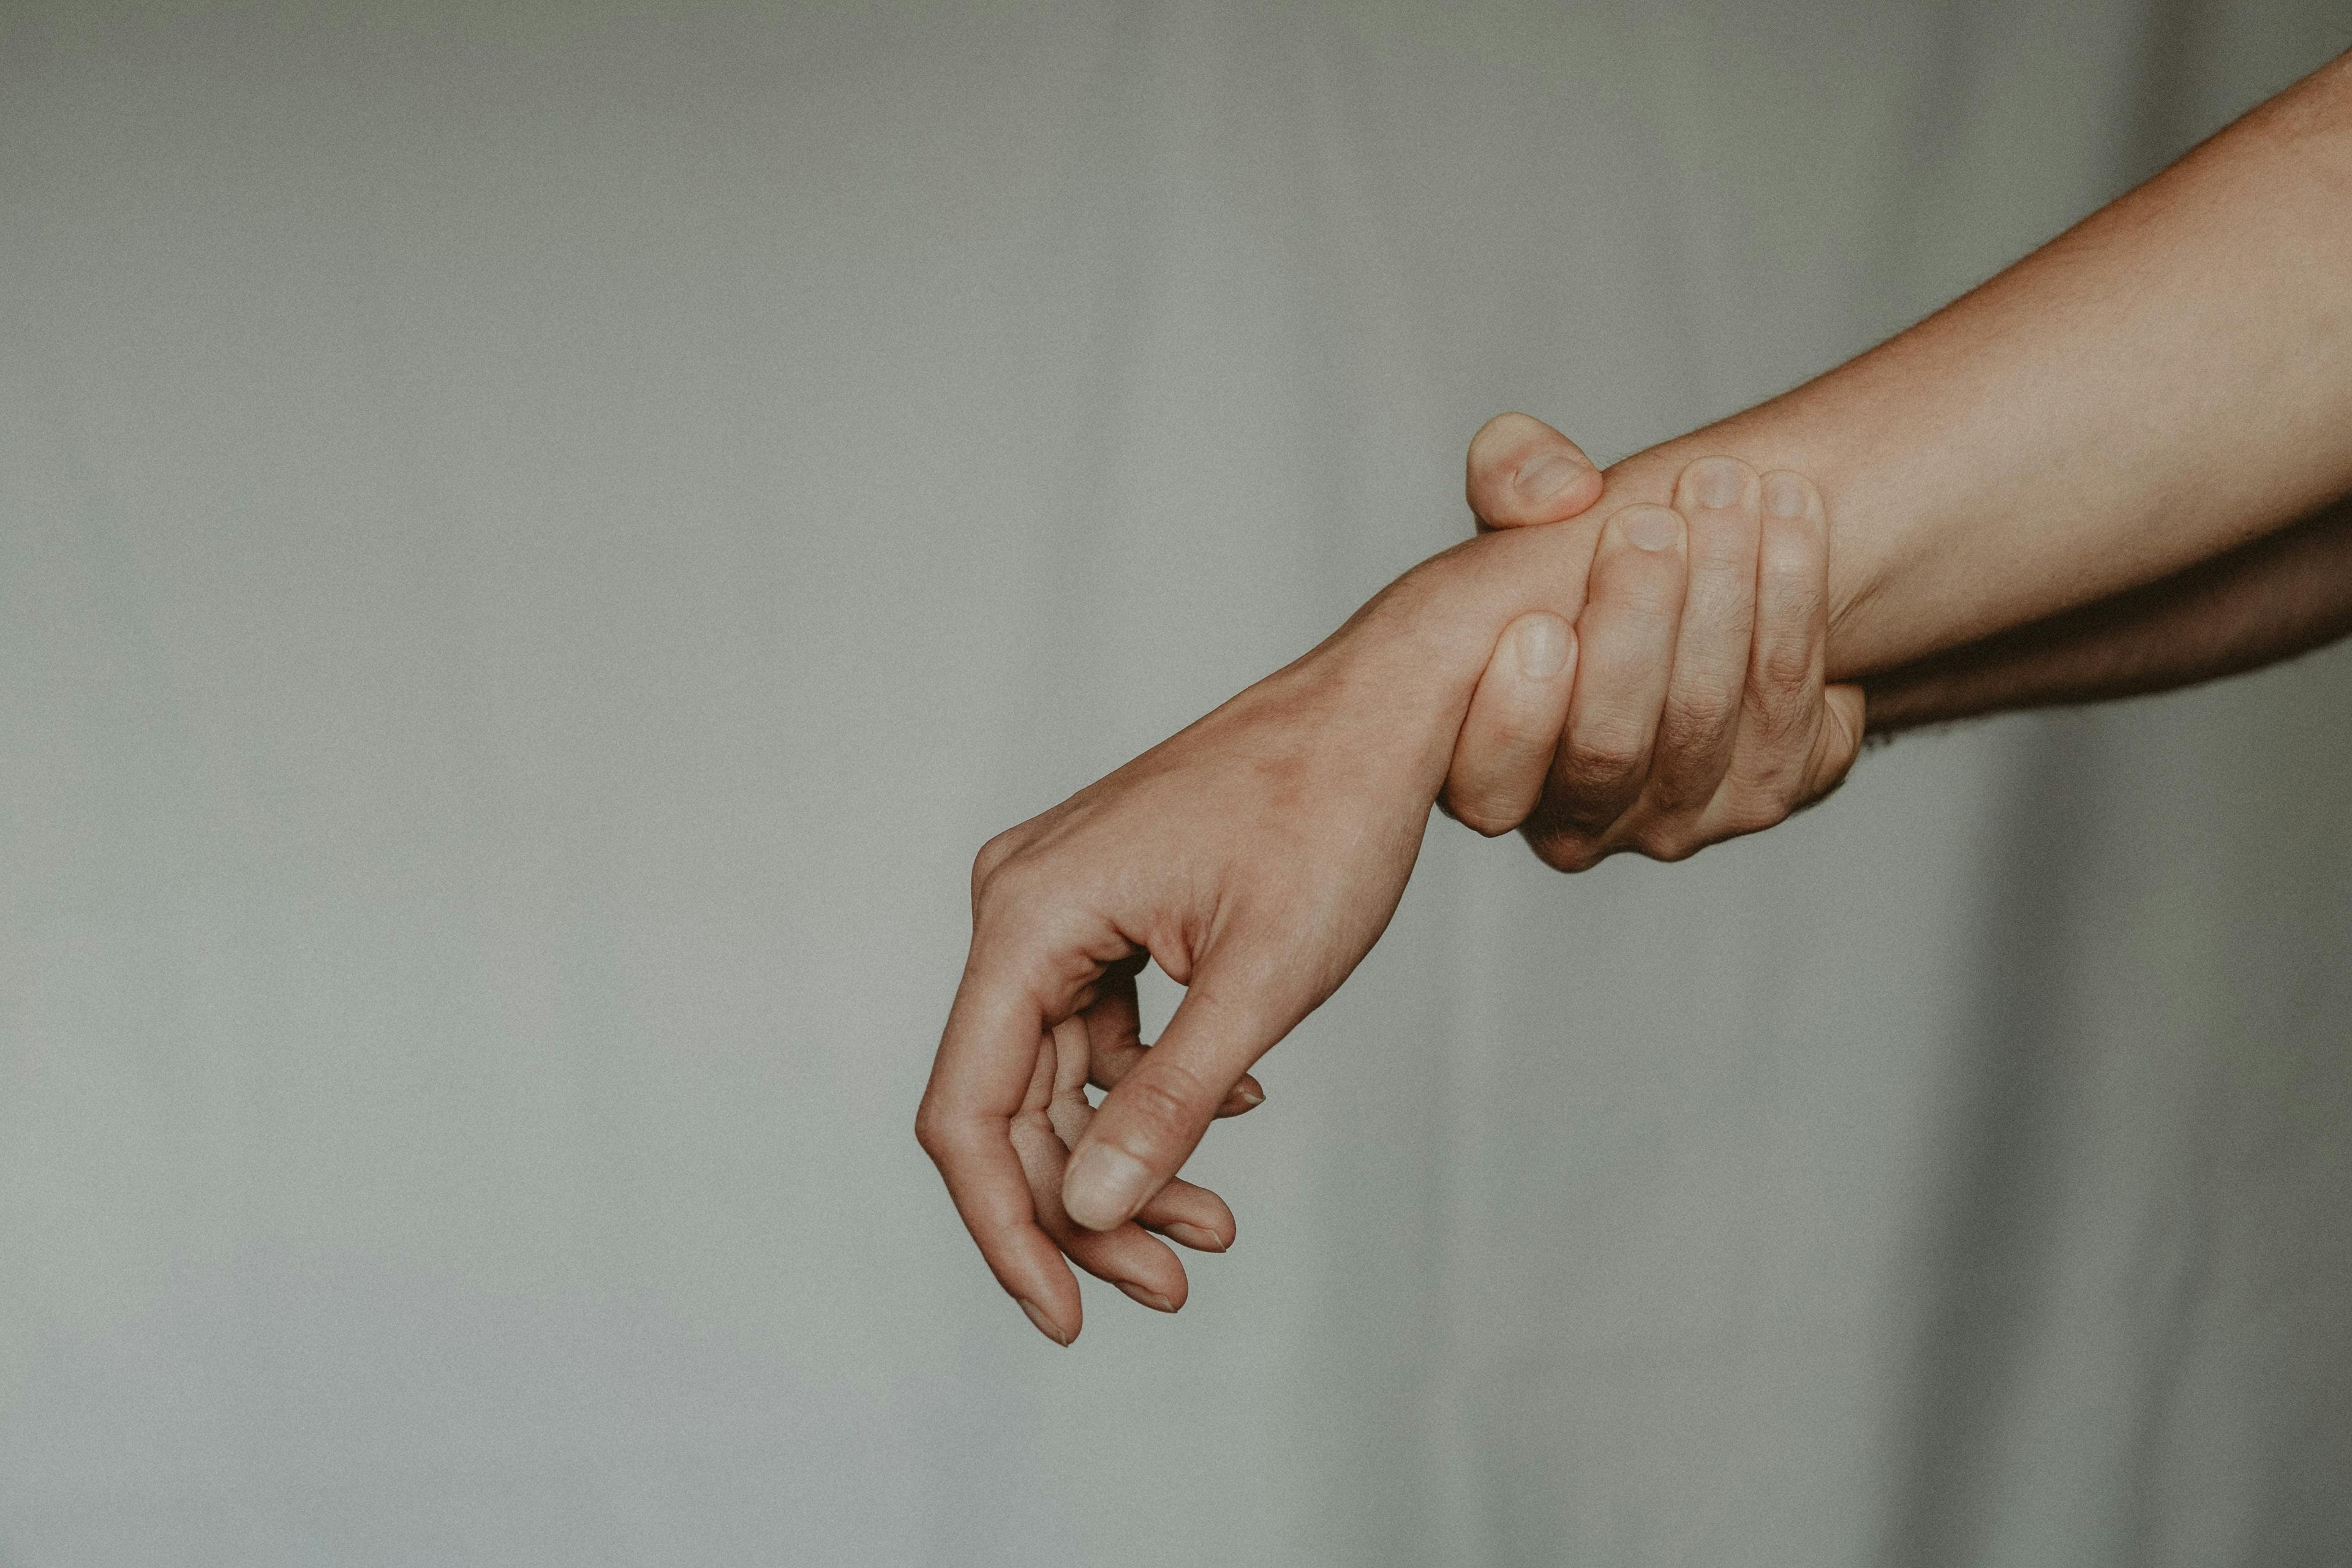 Person grabbing their wrist.